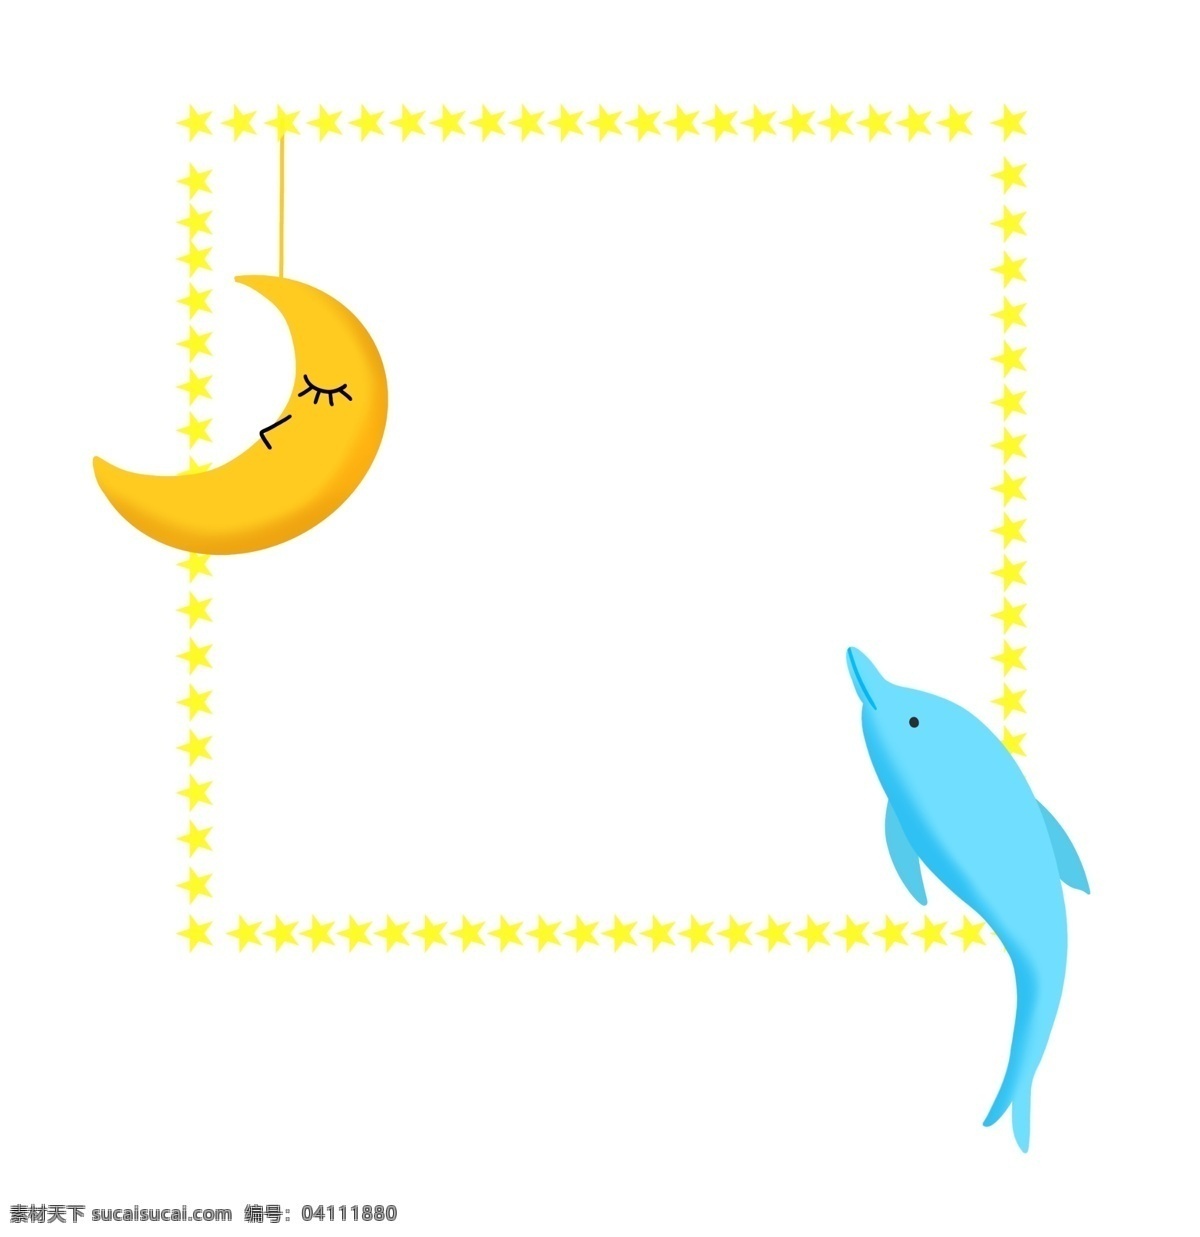 海豚 月亮 边框 插画 月亮边框 海豚边框 月亮边框插画 黄色月亮 卡通月亮边框 蓝色海豚边框 黄色边框